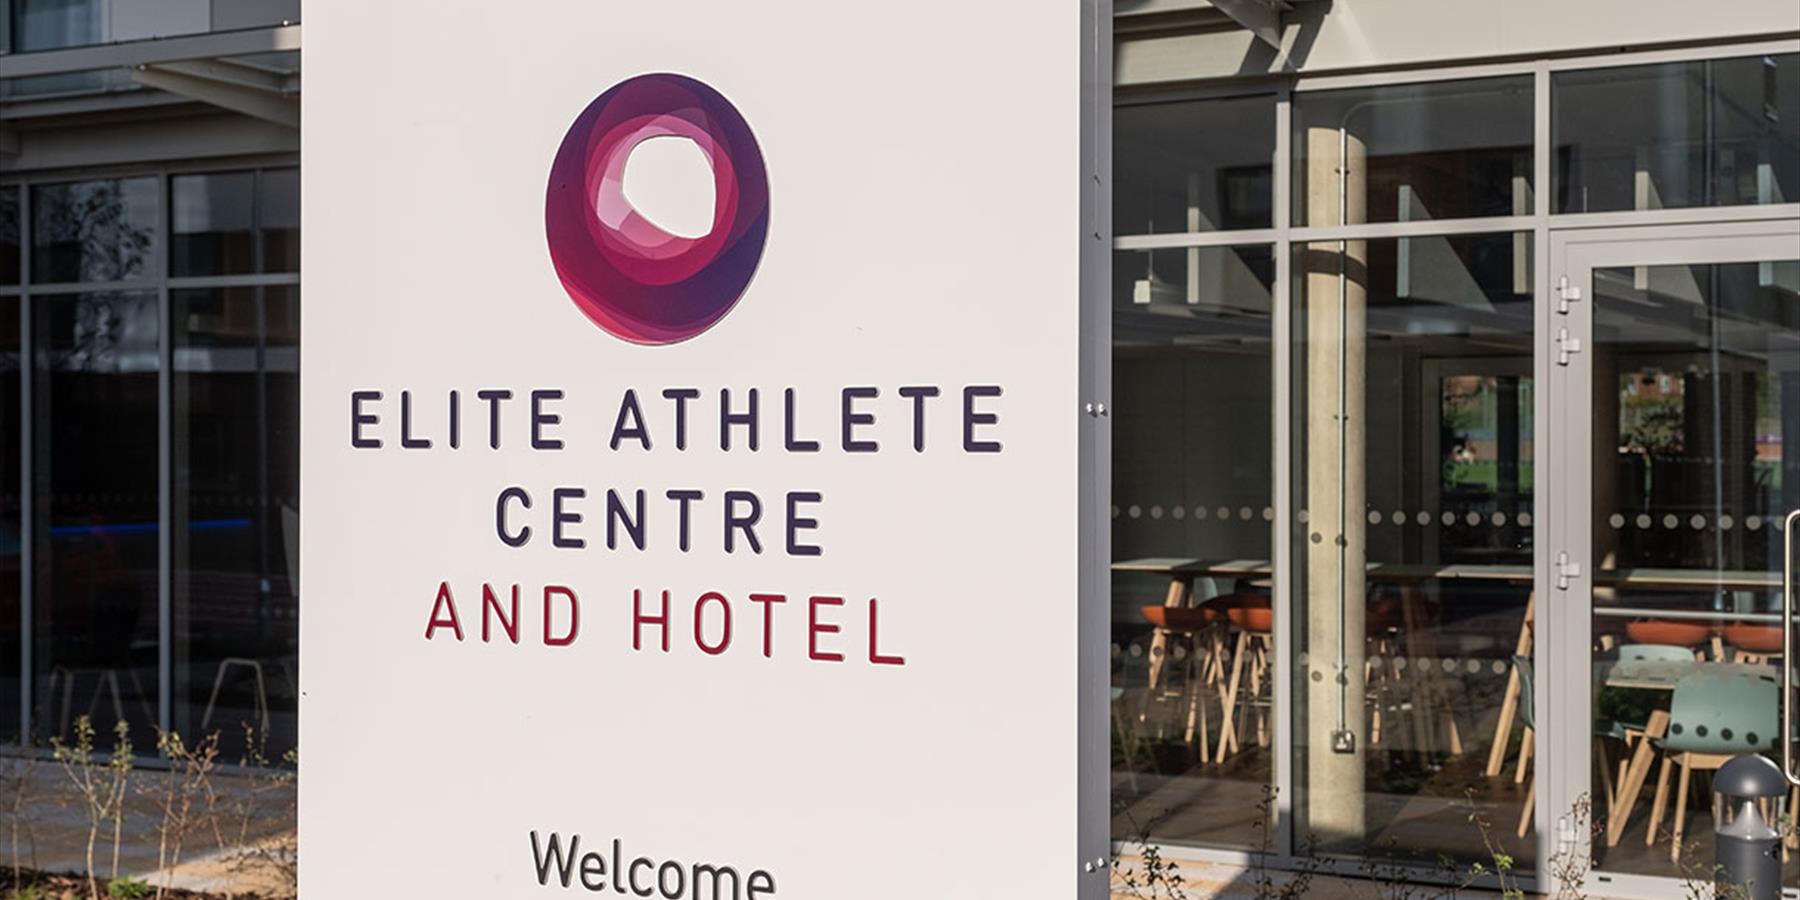 Elite Athlete Centre & Hotel Exterior Sign